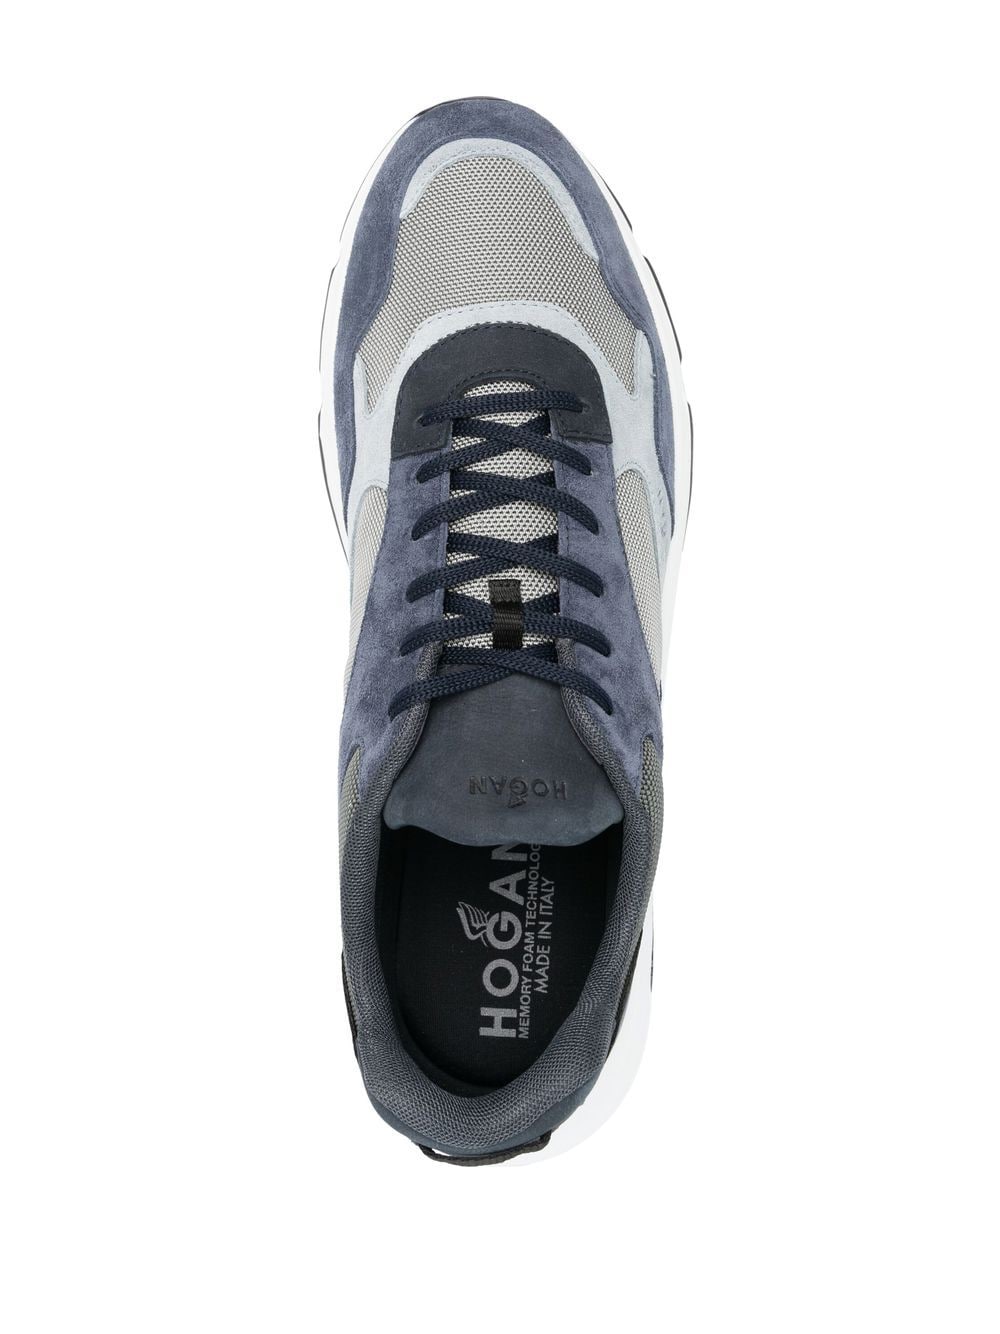 Hogan Pre Sneakers Blue